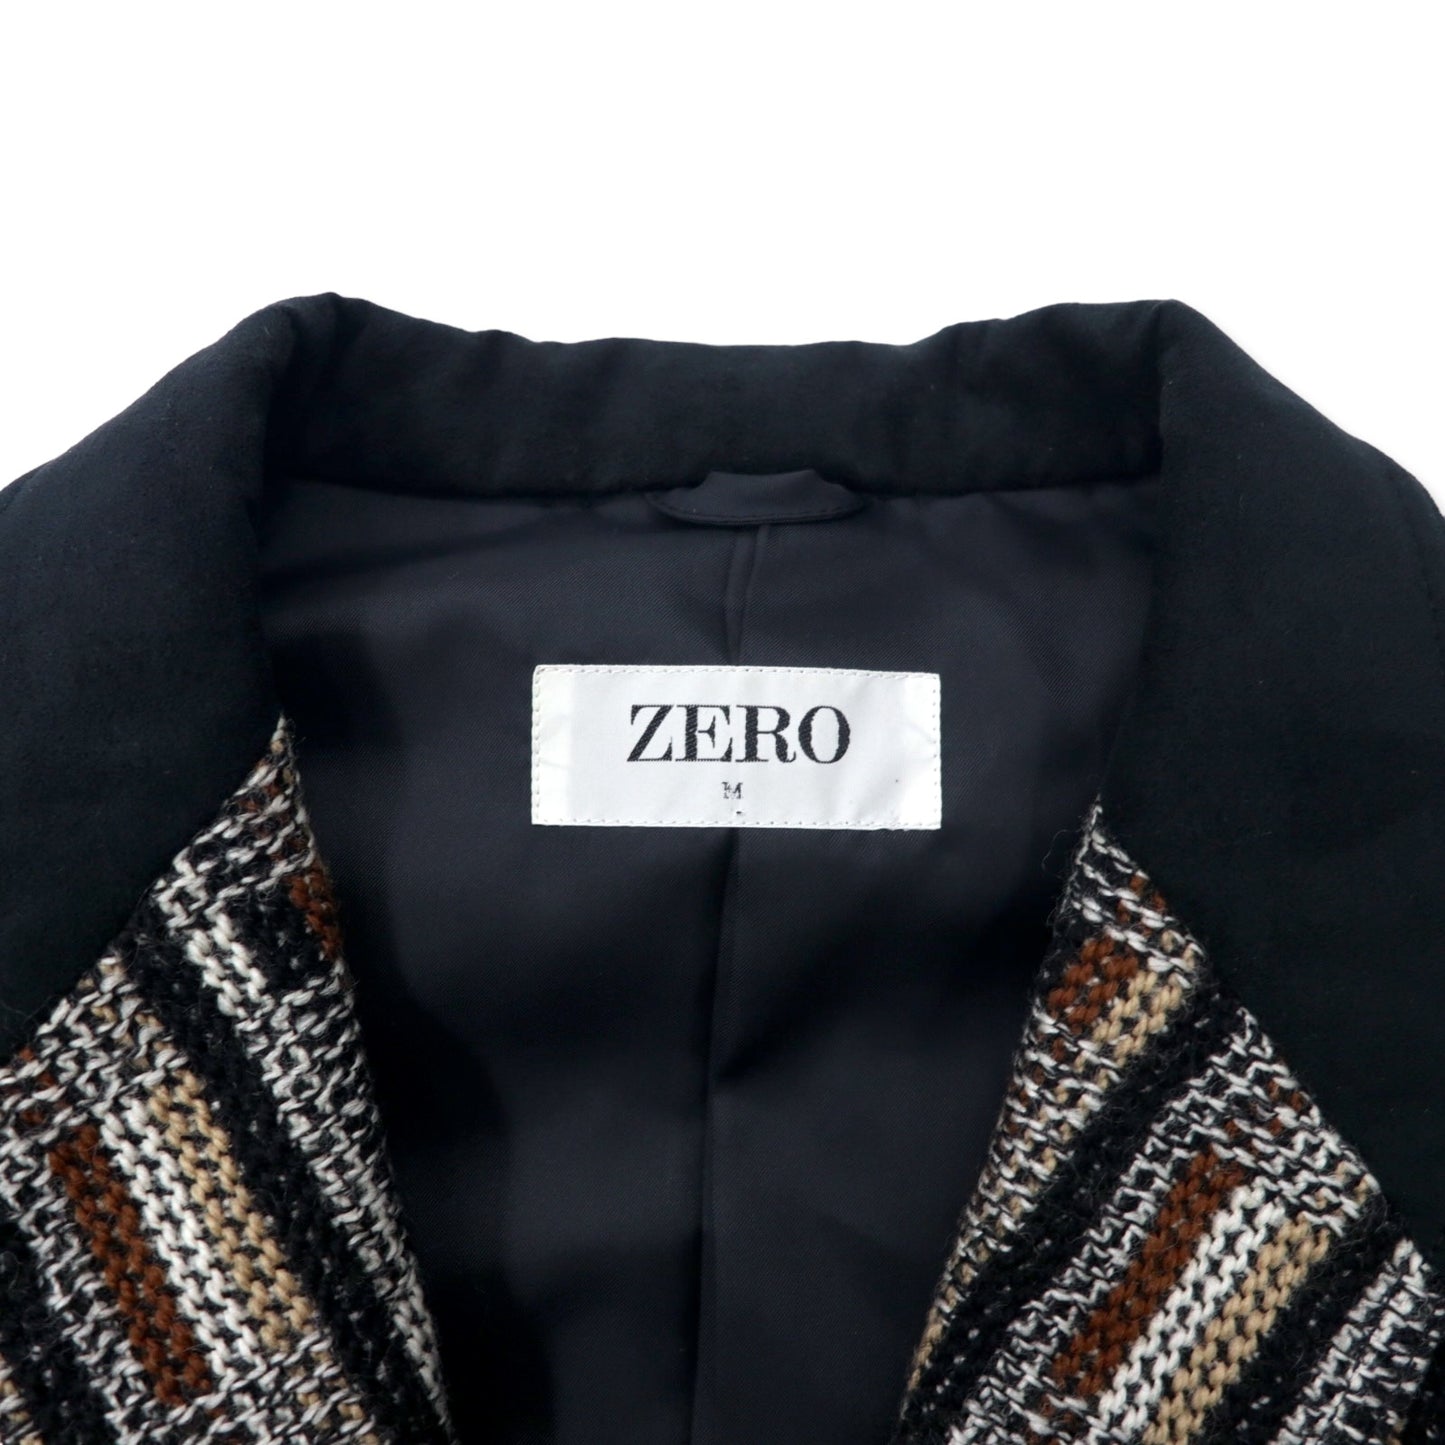 ZERO ブランケットニット テーラードジャケット M マルチカラー グレンチェック 総柄 ウール 日本製 未使用品